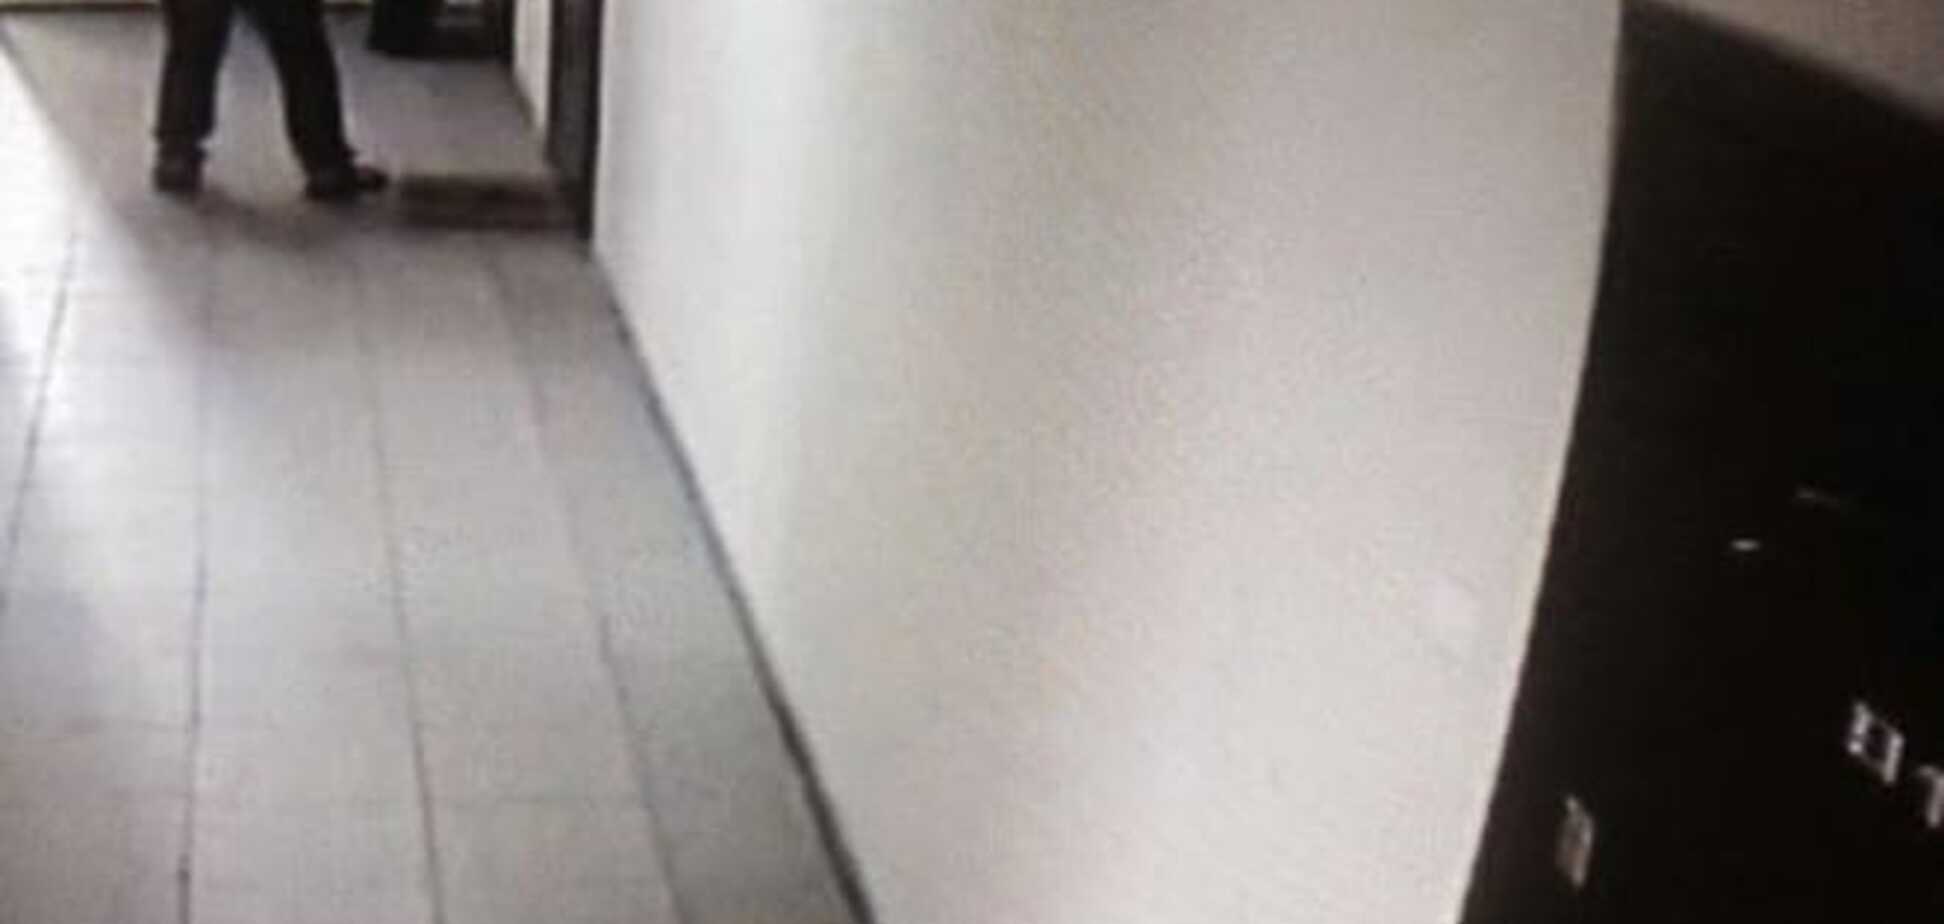 В киевской многоэтажке подозрительный тип проверял двери квартир: фото